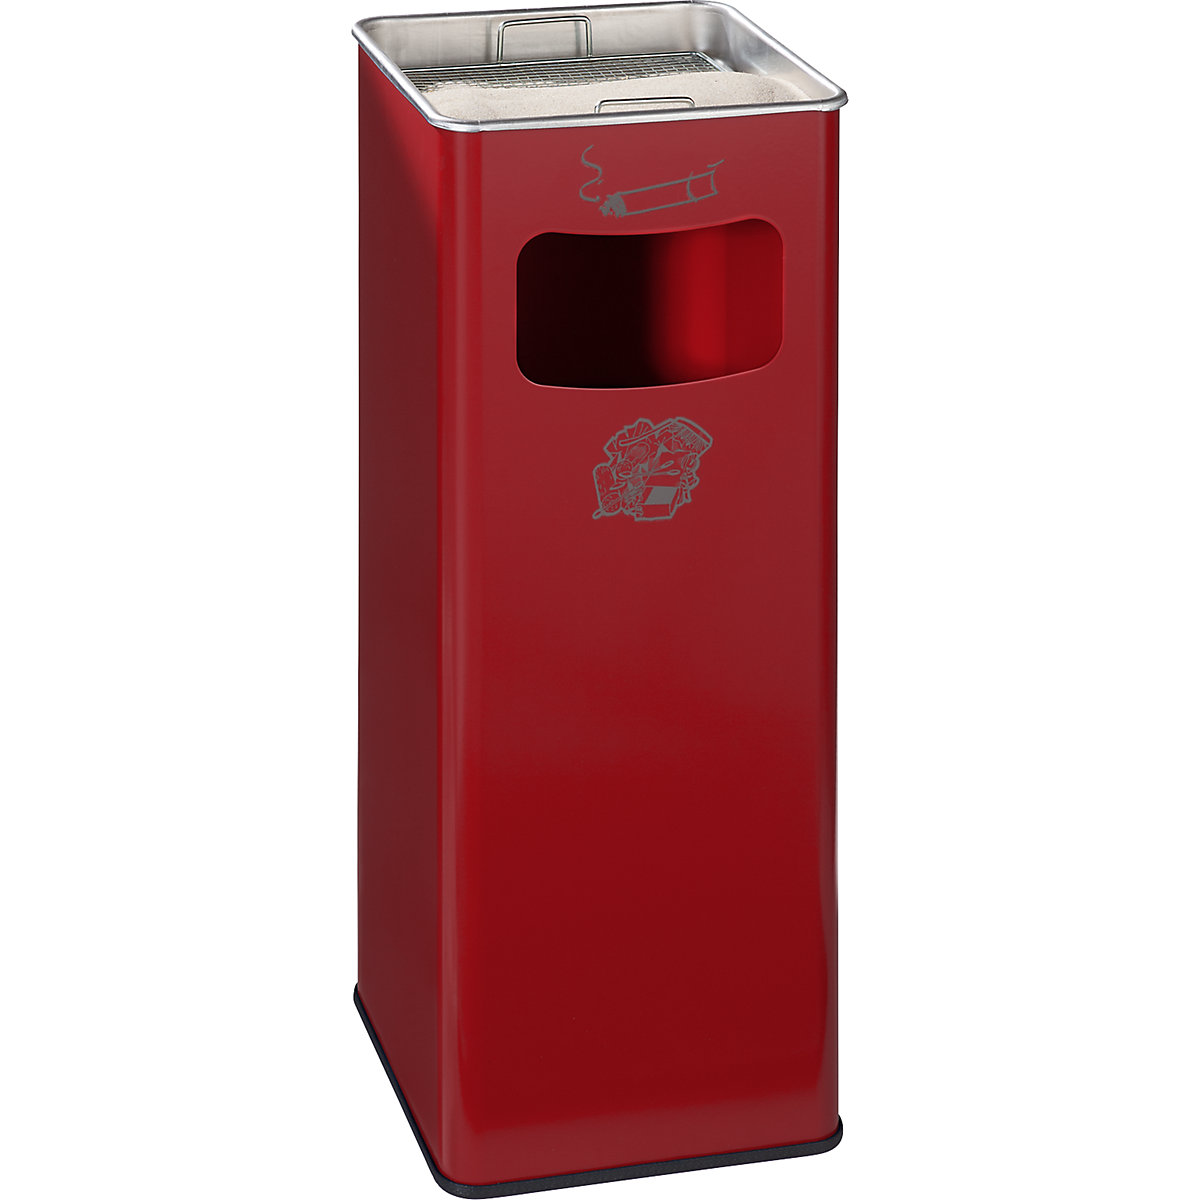 VAR – Kombinovaný popelník, objem 32 l, š x v x h 260 x 665 x 260 mm, ocelový plech, ohnivě červená